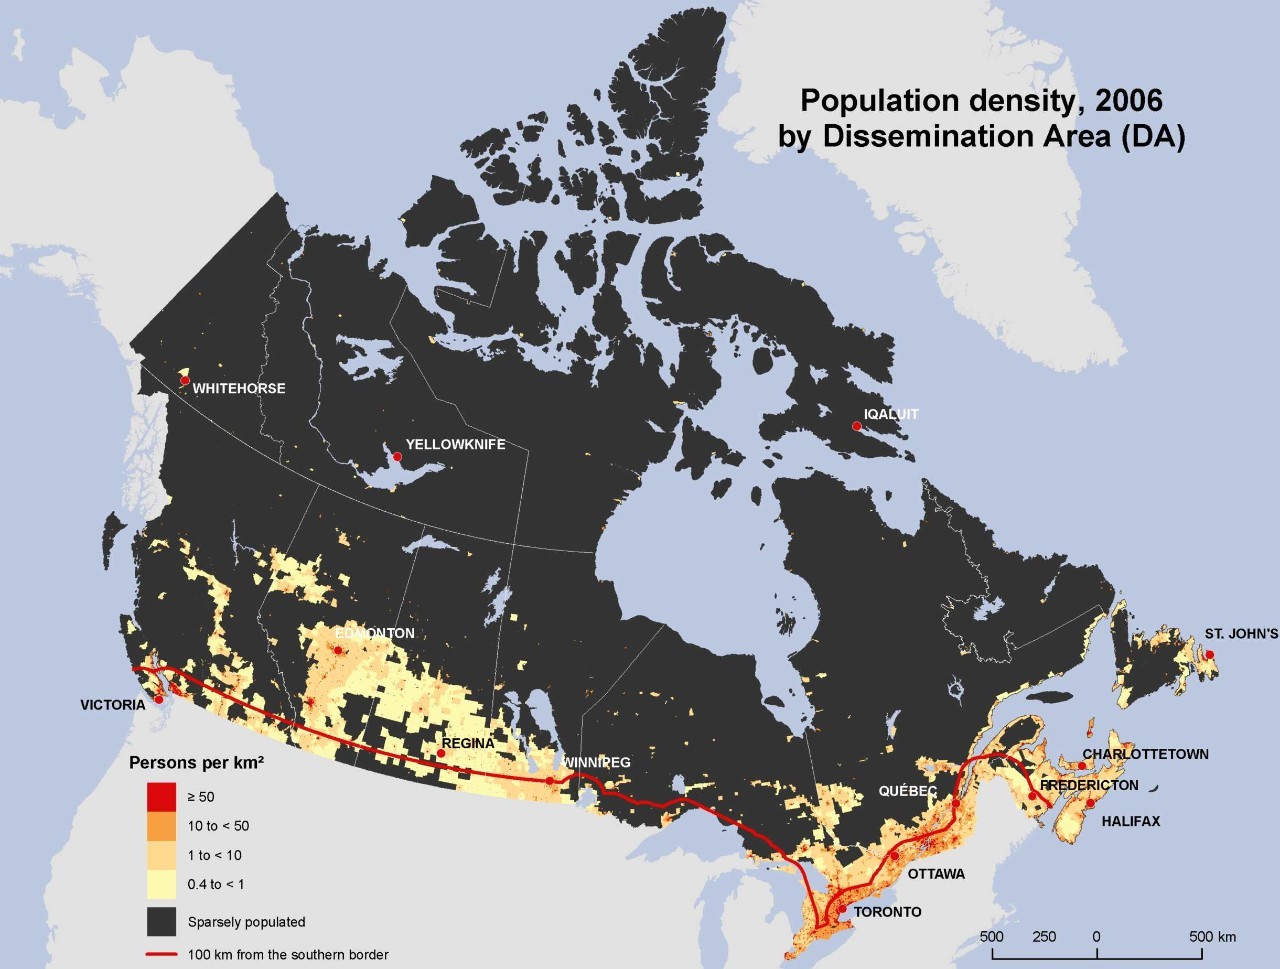 加拿大国土面积和人口_加拿大大量揽人,5大理由告诉你,2021年为何要移民加拿大